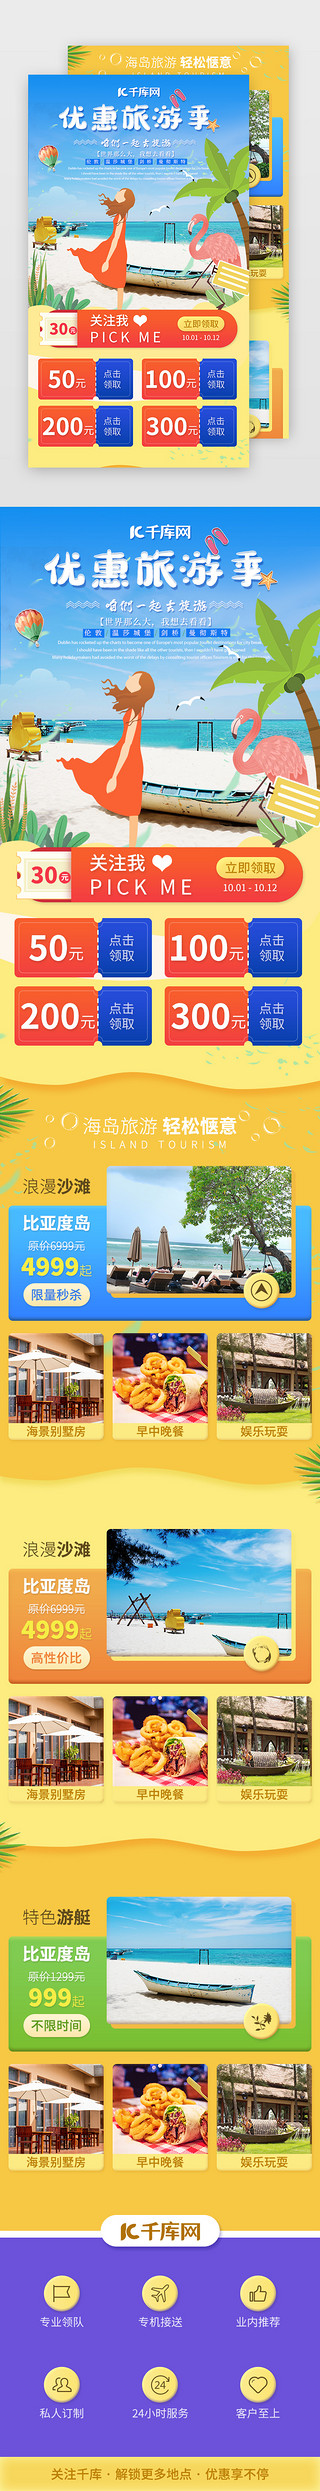 旅行黄色UI设计素材_国庆旅游旅行景点介绍H5